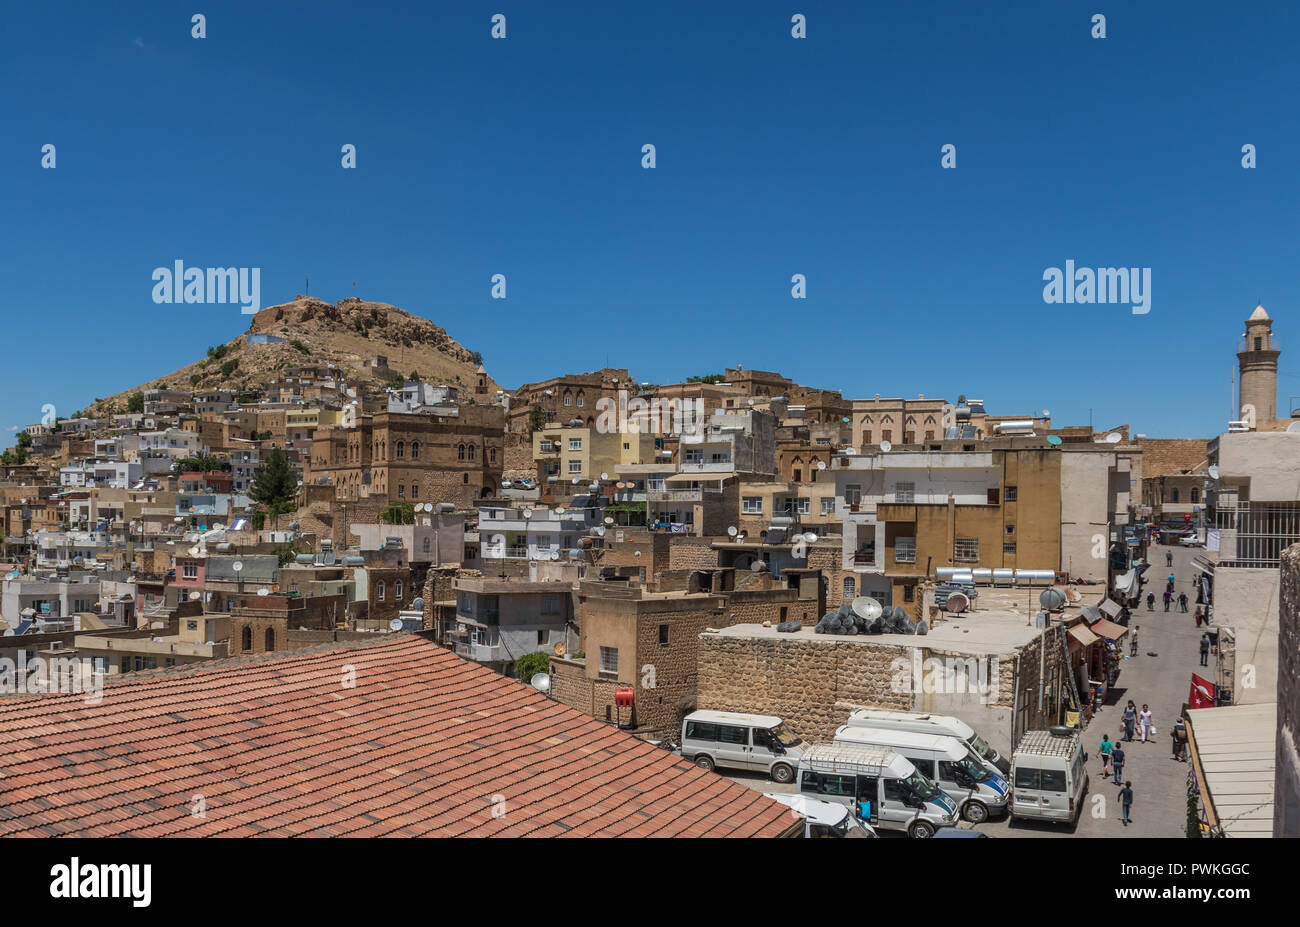 Südöstlichen Anatolien ist ein trockener und Wüstenhaft region Vordingborg mit Syrien und dem Irak, die zeigt einige erstaunliche Städte und Dörfer Stockfoto